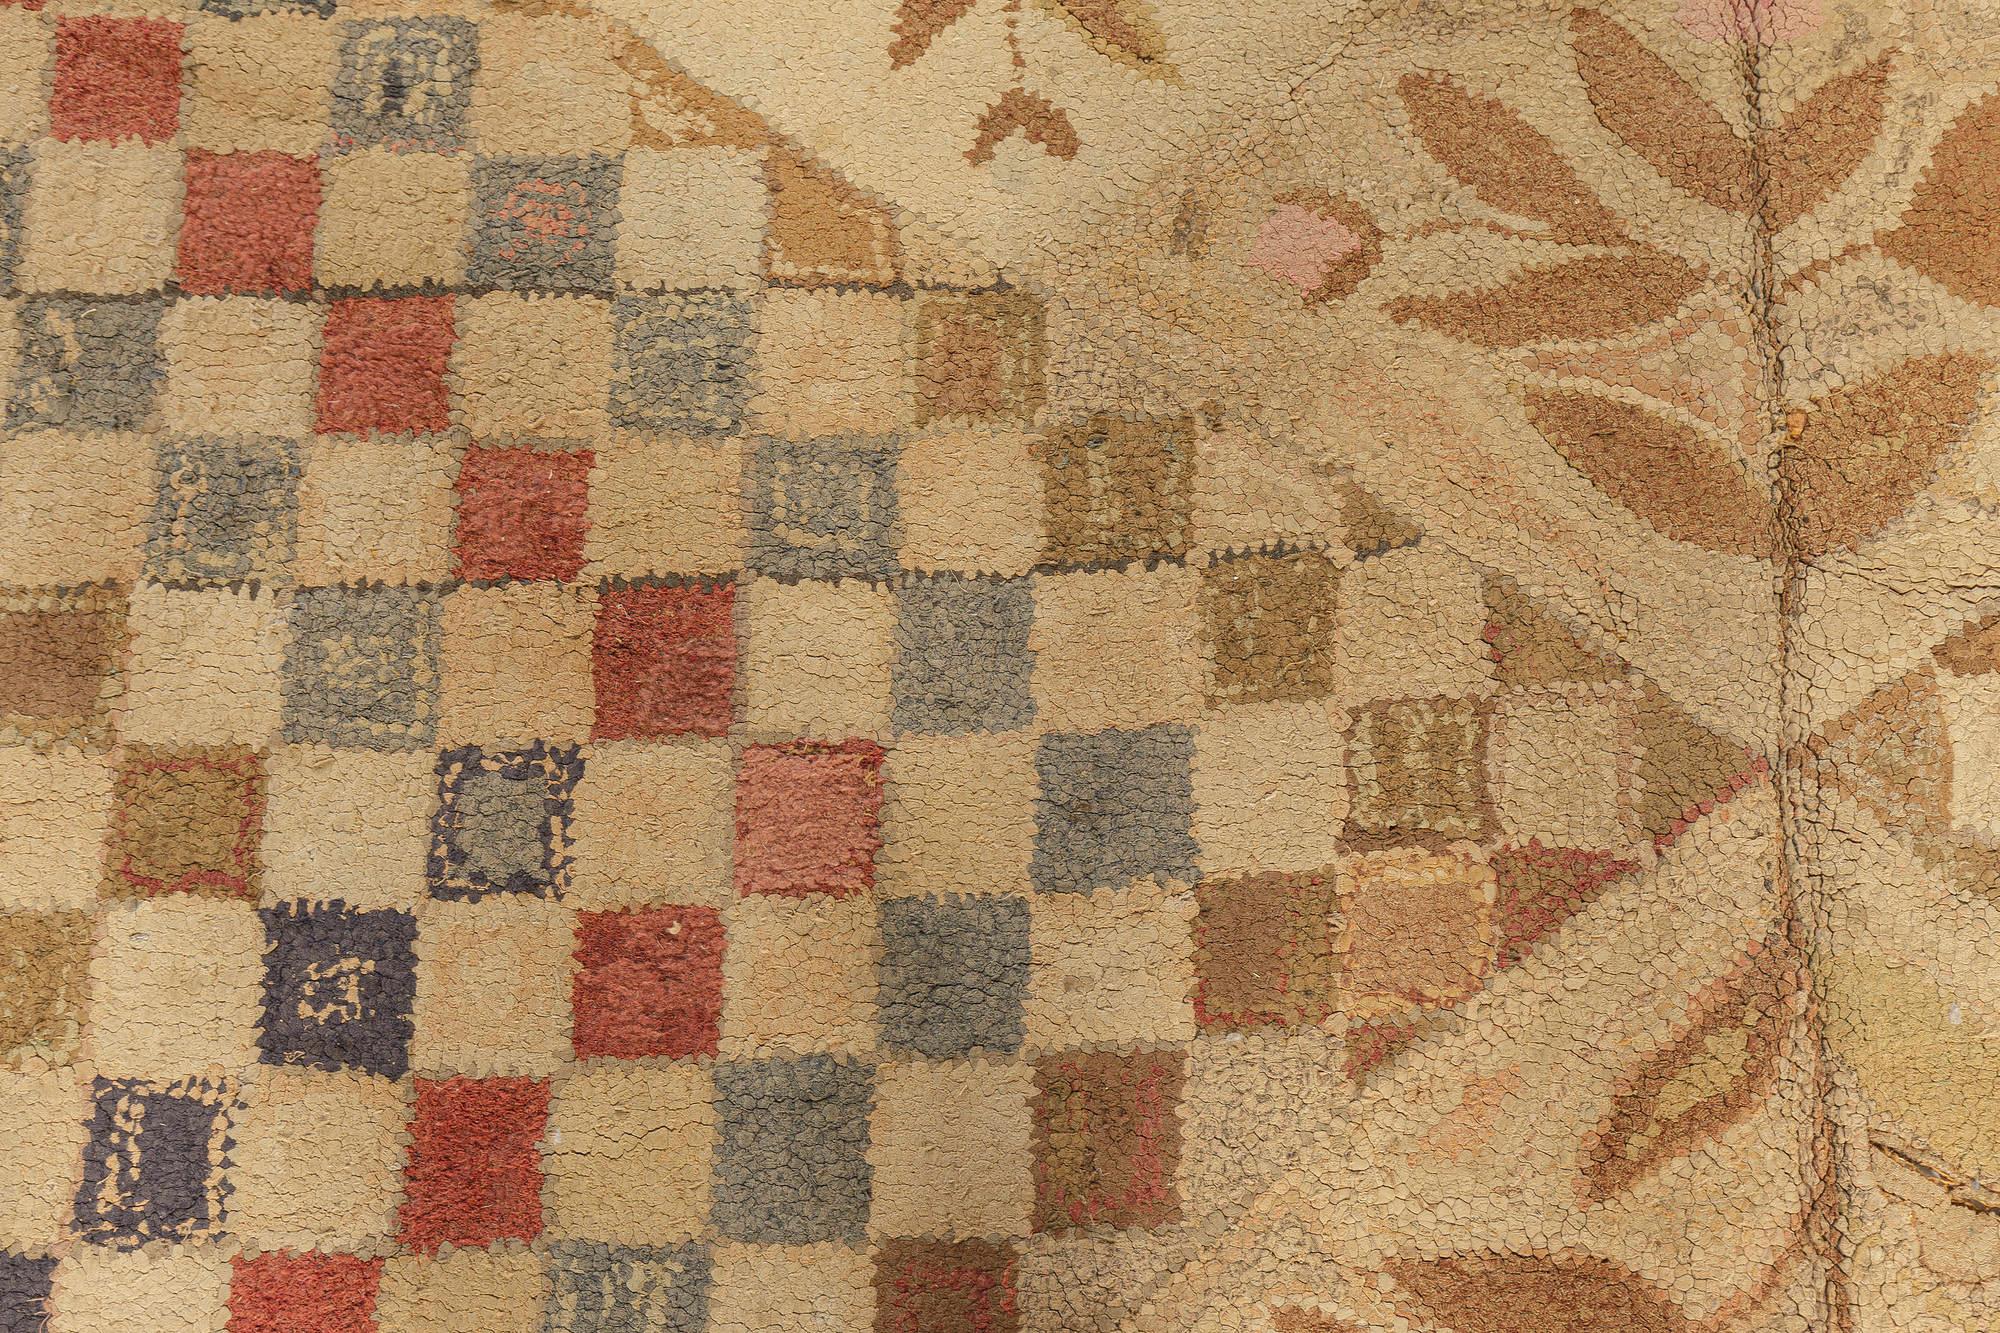 Motifs botaniques sur fond beige à carreaux Tapis en laine crochetée du milieu du 20e siècle
Taille : 8'8